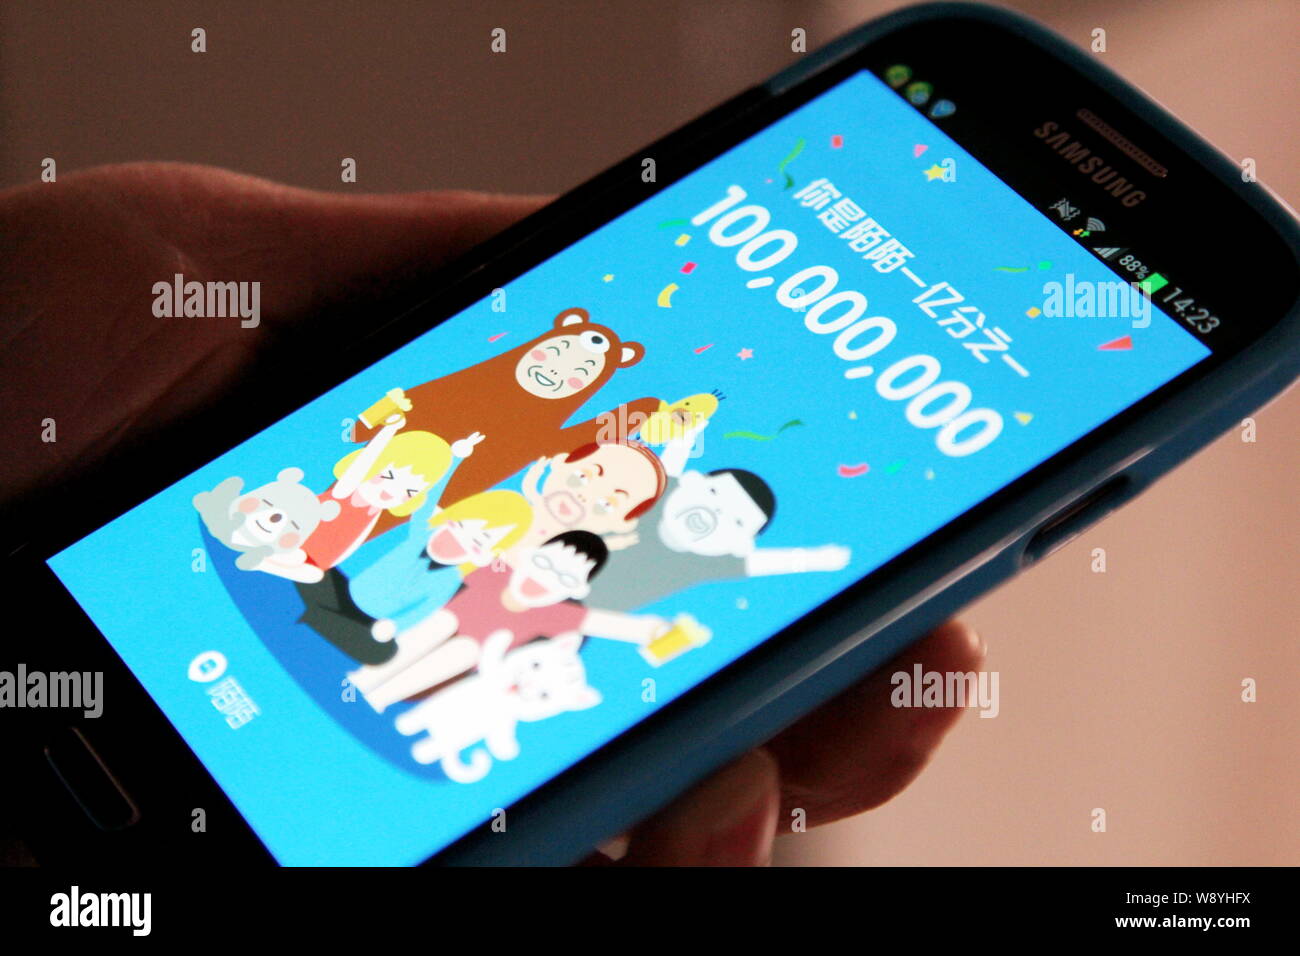 --FILE--Un utilisateur chinois utilise la messagerie instantanée mobile app Momo sur son smartphone Samsung à Shanghai, Chine, le 8 février 2014. Momo, une popul Banque D'Images